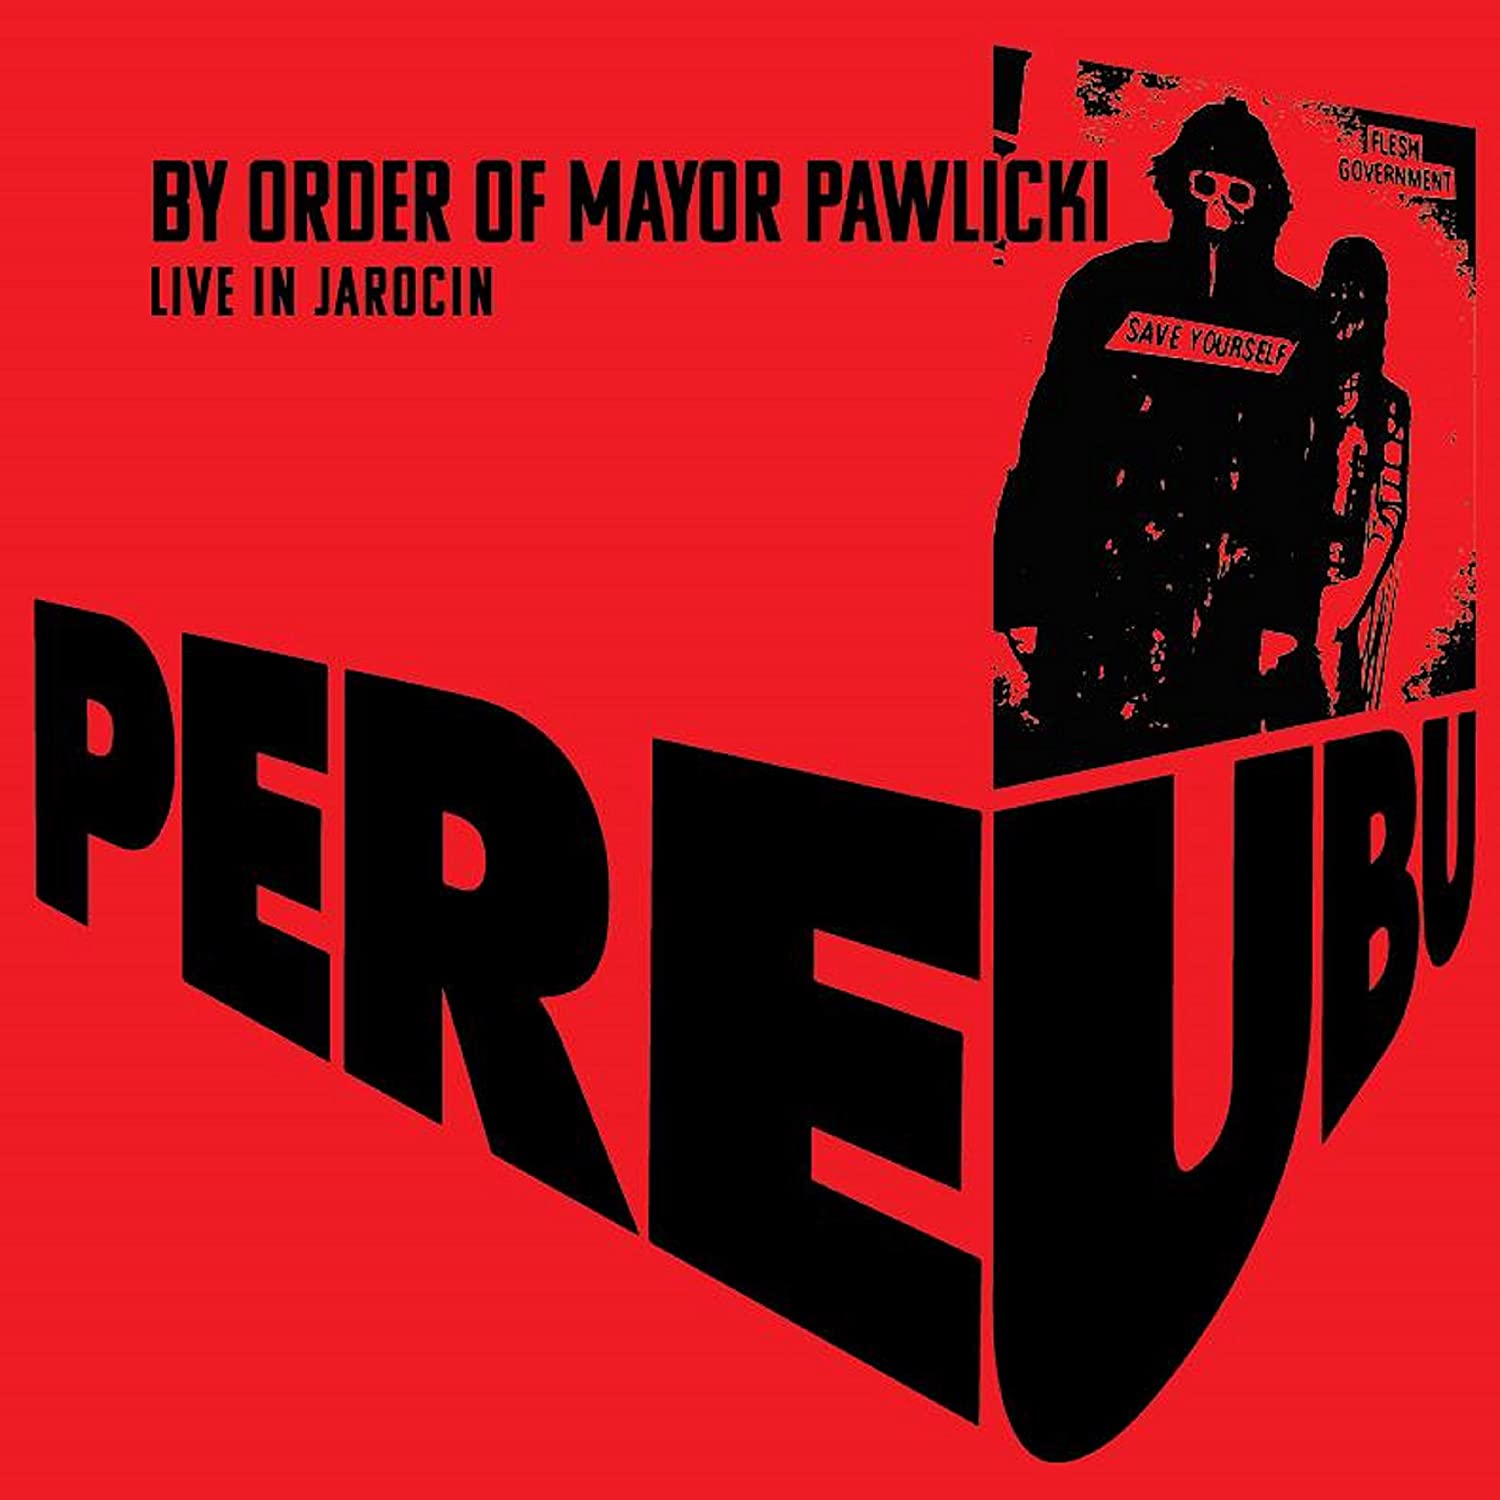 Vinile Pere Ubu - By Order Of Mayor Pawlicki (Live In Jarocin) Coloured Vinyl (2 Lp) NUOVO SIGILLATO, EDIZIONE DEL 28/04/2020 SUBITO DISPONIBILE